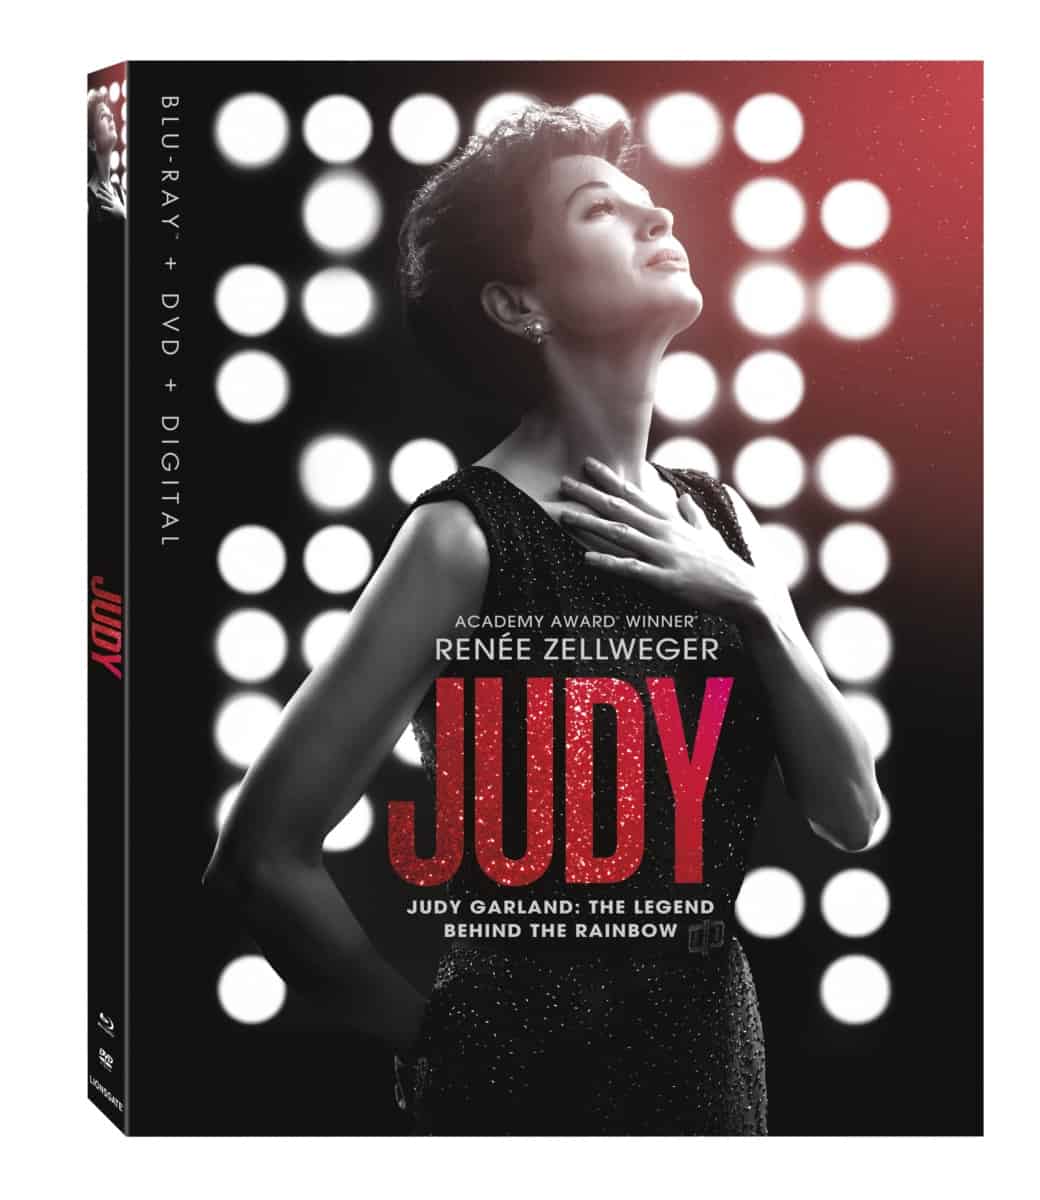 Judy blu-ray box art end of year